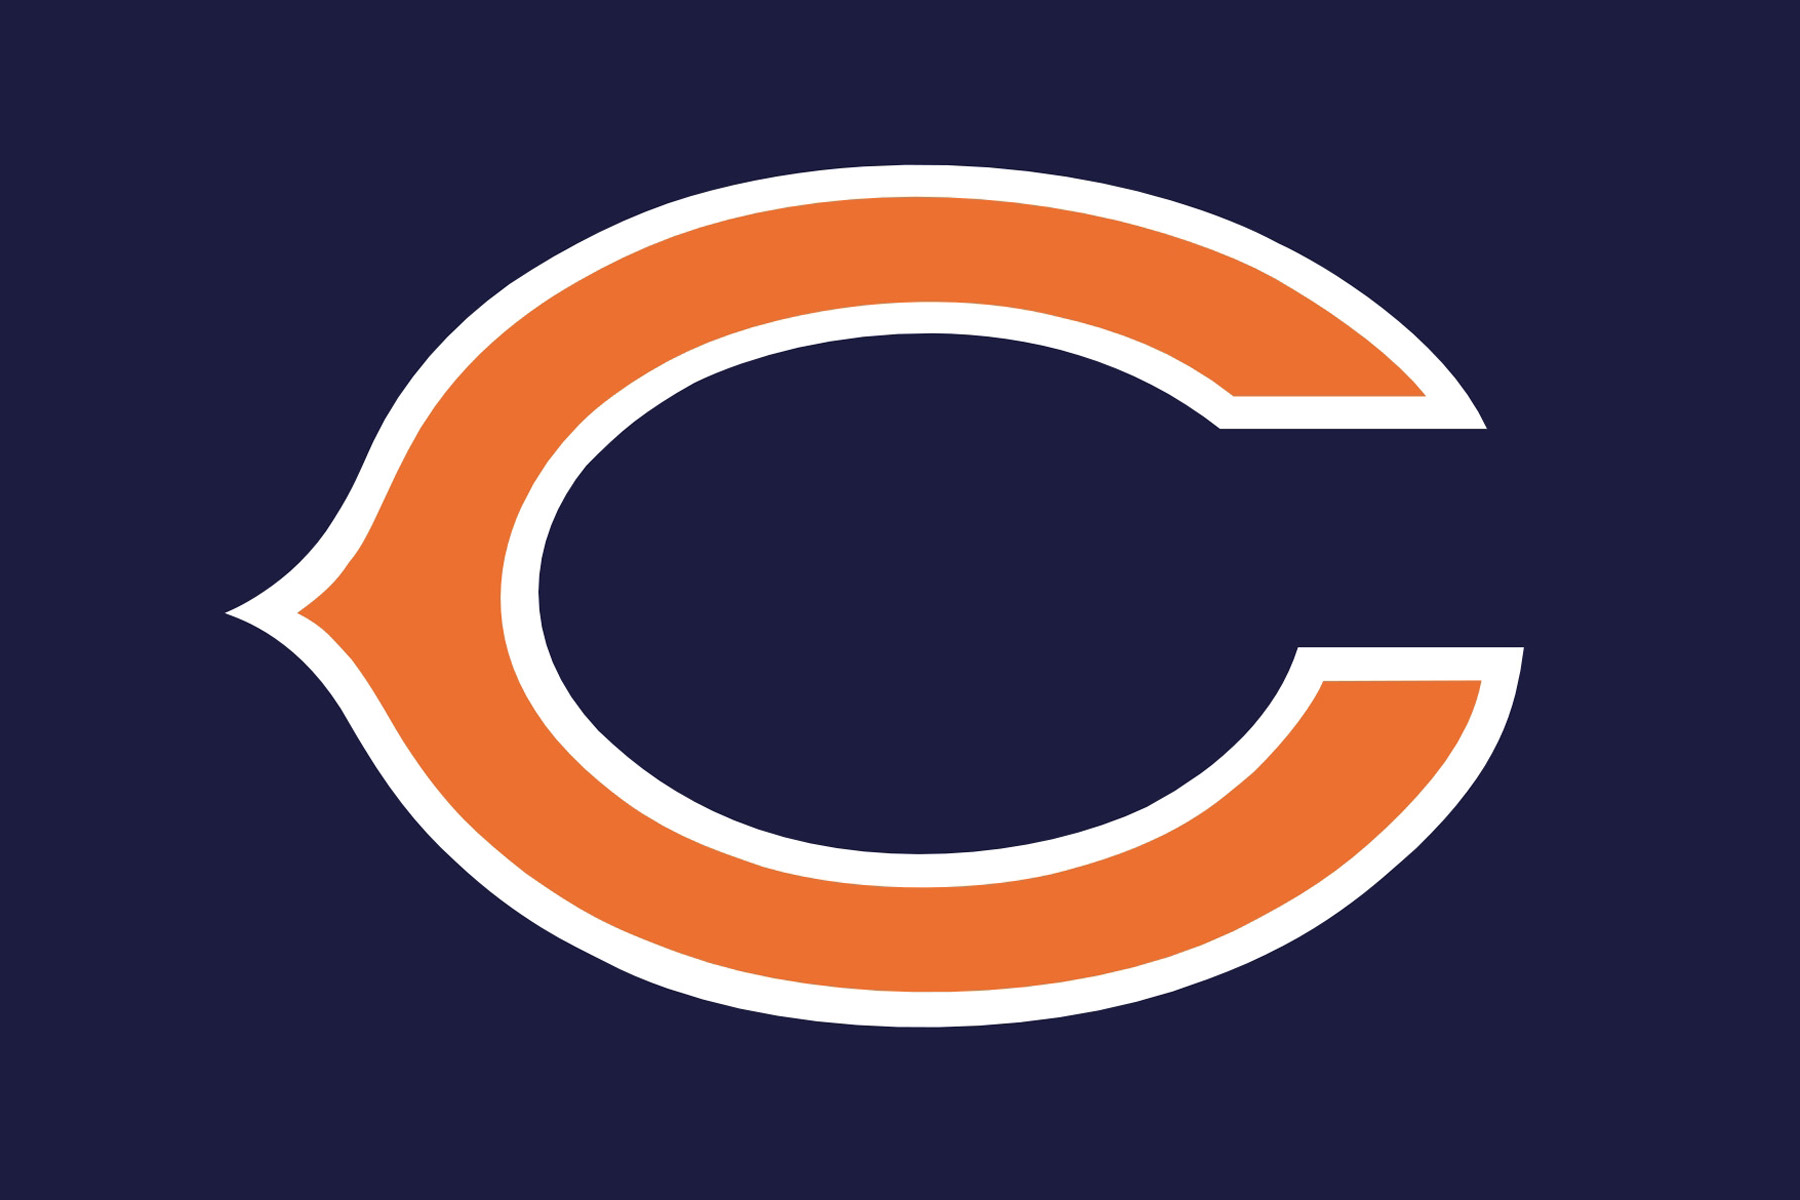 Chicago Bears Logo - ClipArt Best